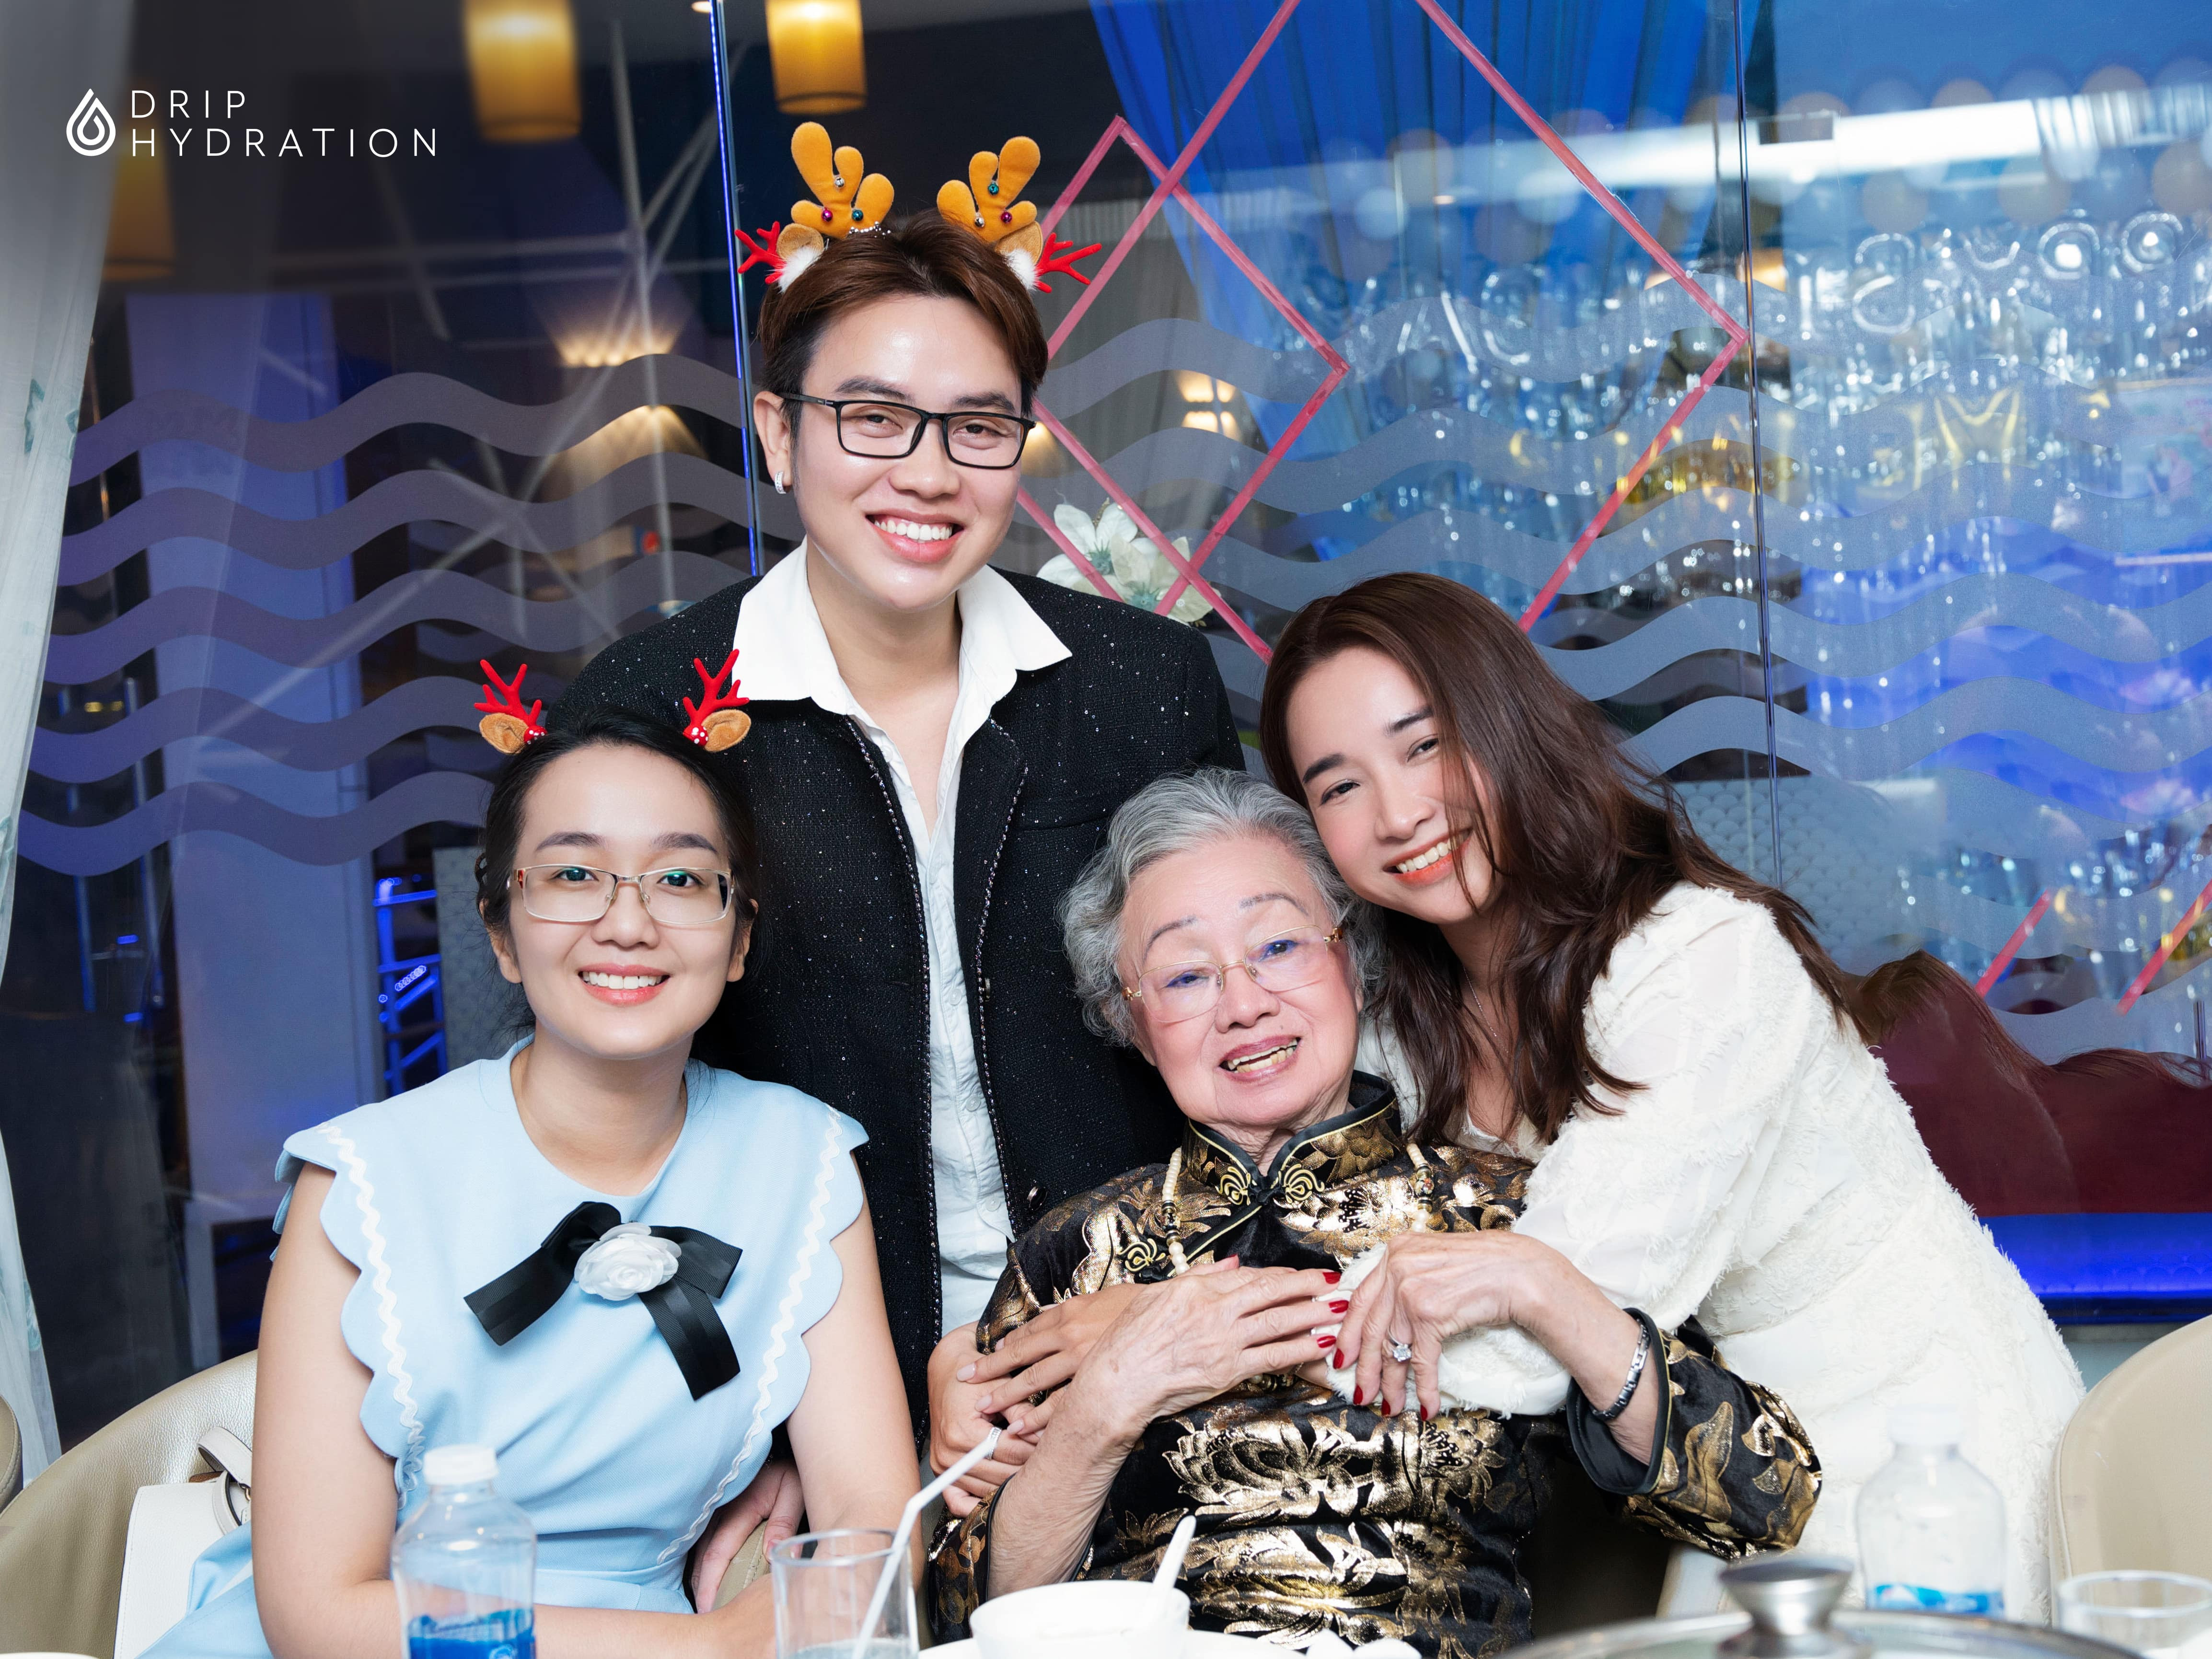 Đội ngũ Drip hạnh phúc trong bộ ảnh đón tuổi của Ms. Xuân Lan - VIP Member lớn tuổi nhất của Drip.